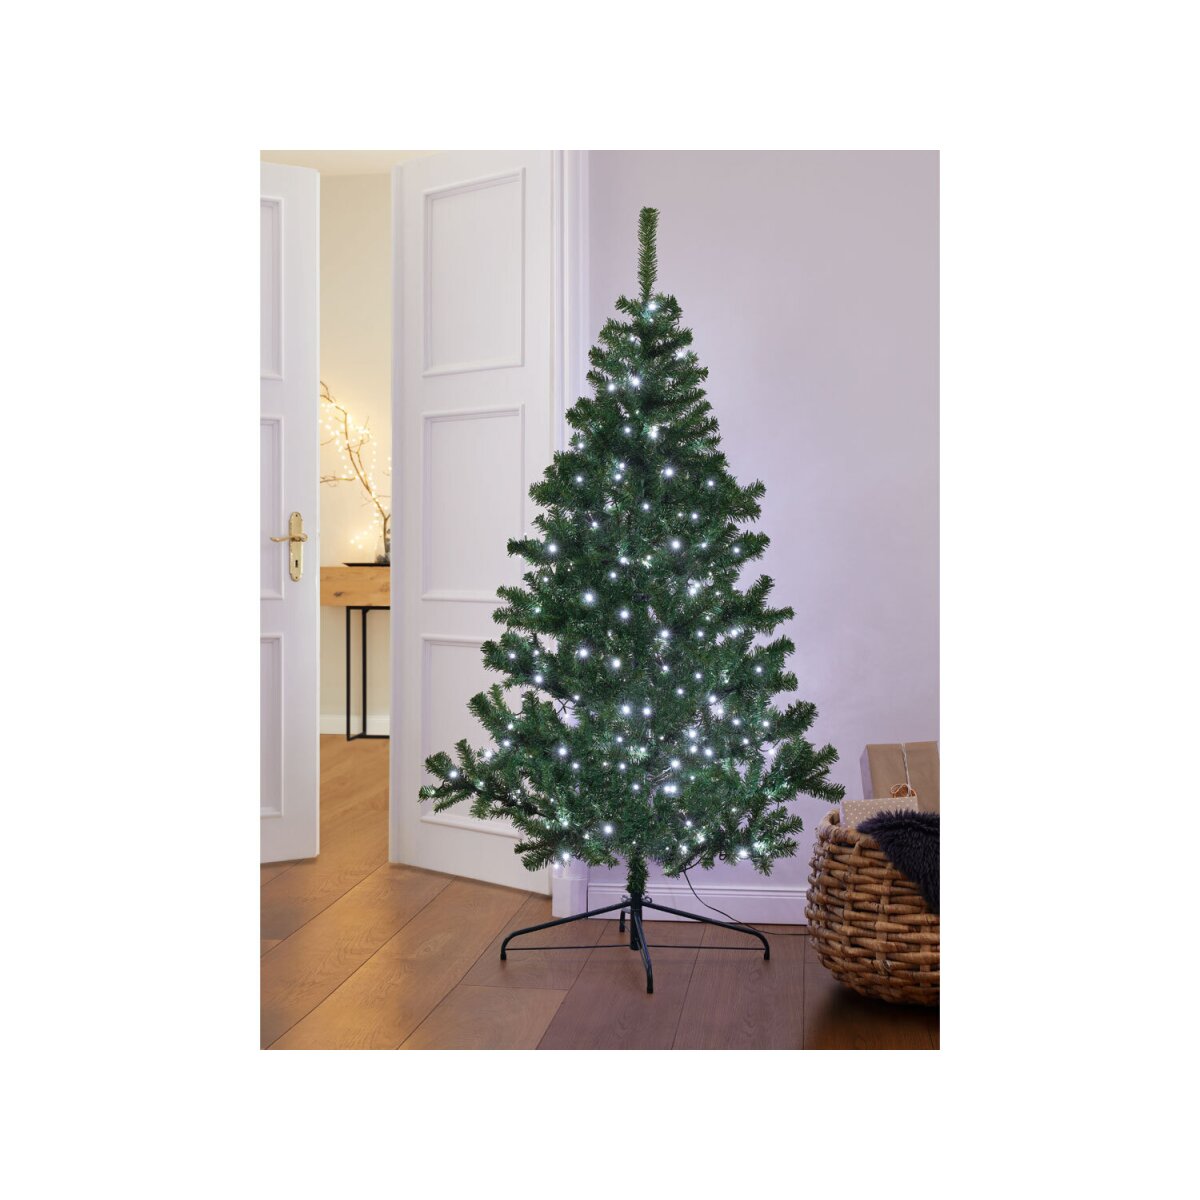 € LIVARNO 15,99 - Weihnachtsbaum besonders Geäst B-Ware, mit künstlich, dichtem home